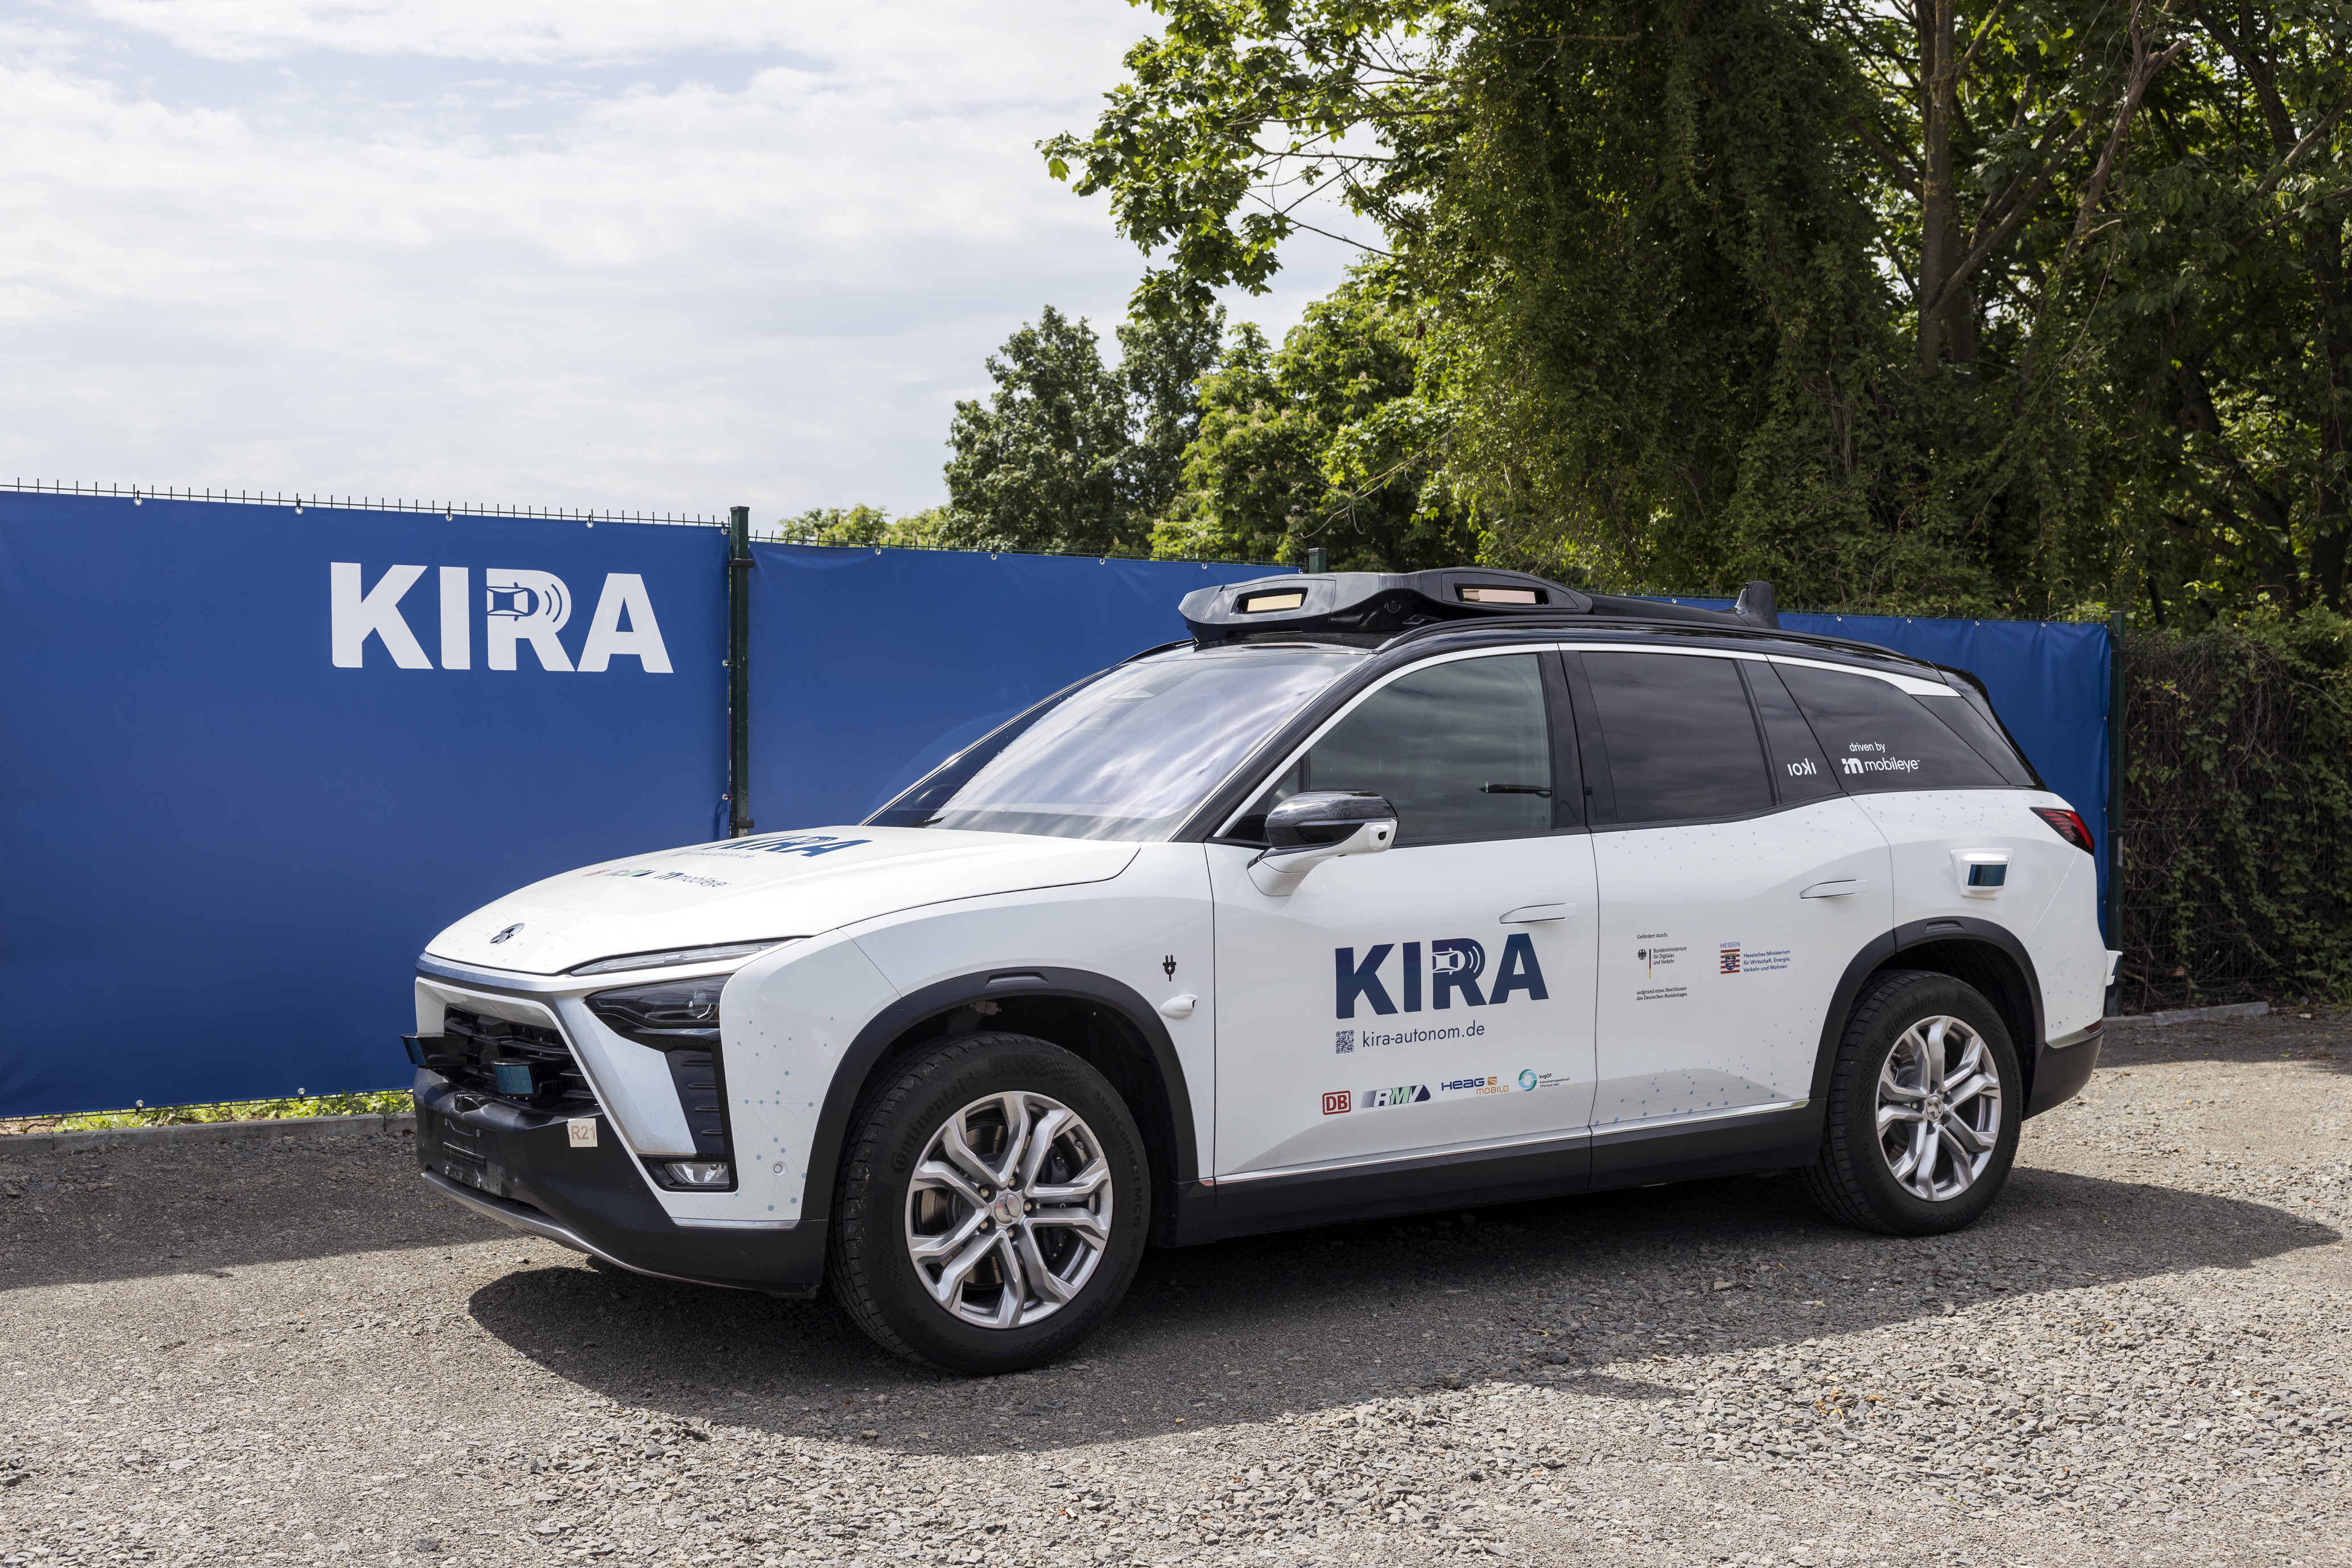 Pionierprojekt KIRA startet mit autonomen Fahrzeugen für den ÖPNV